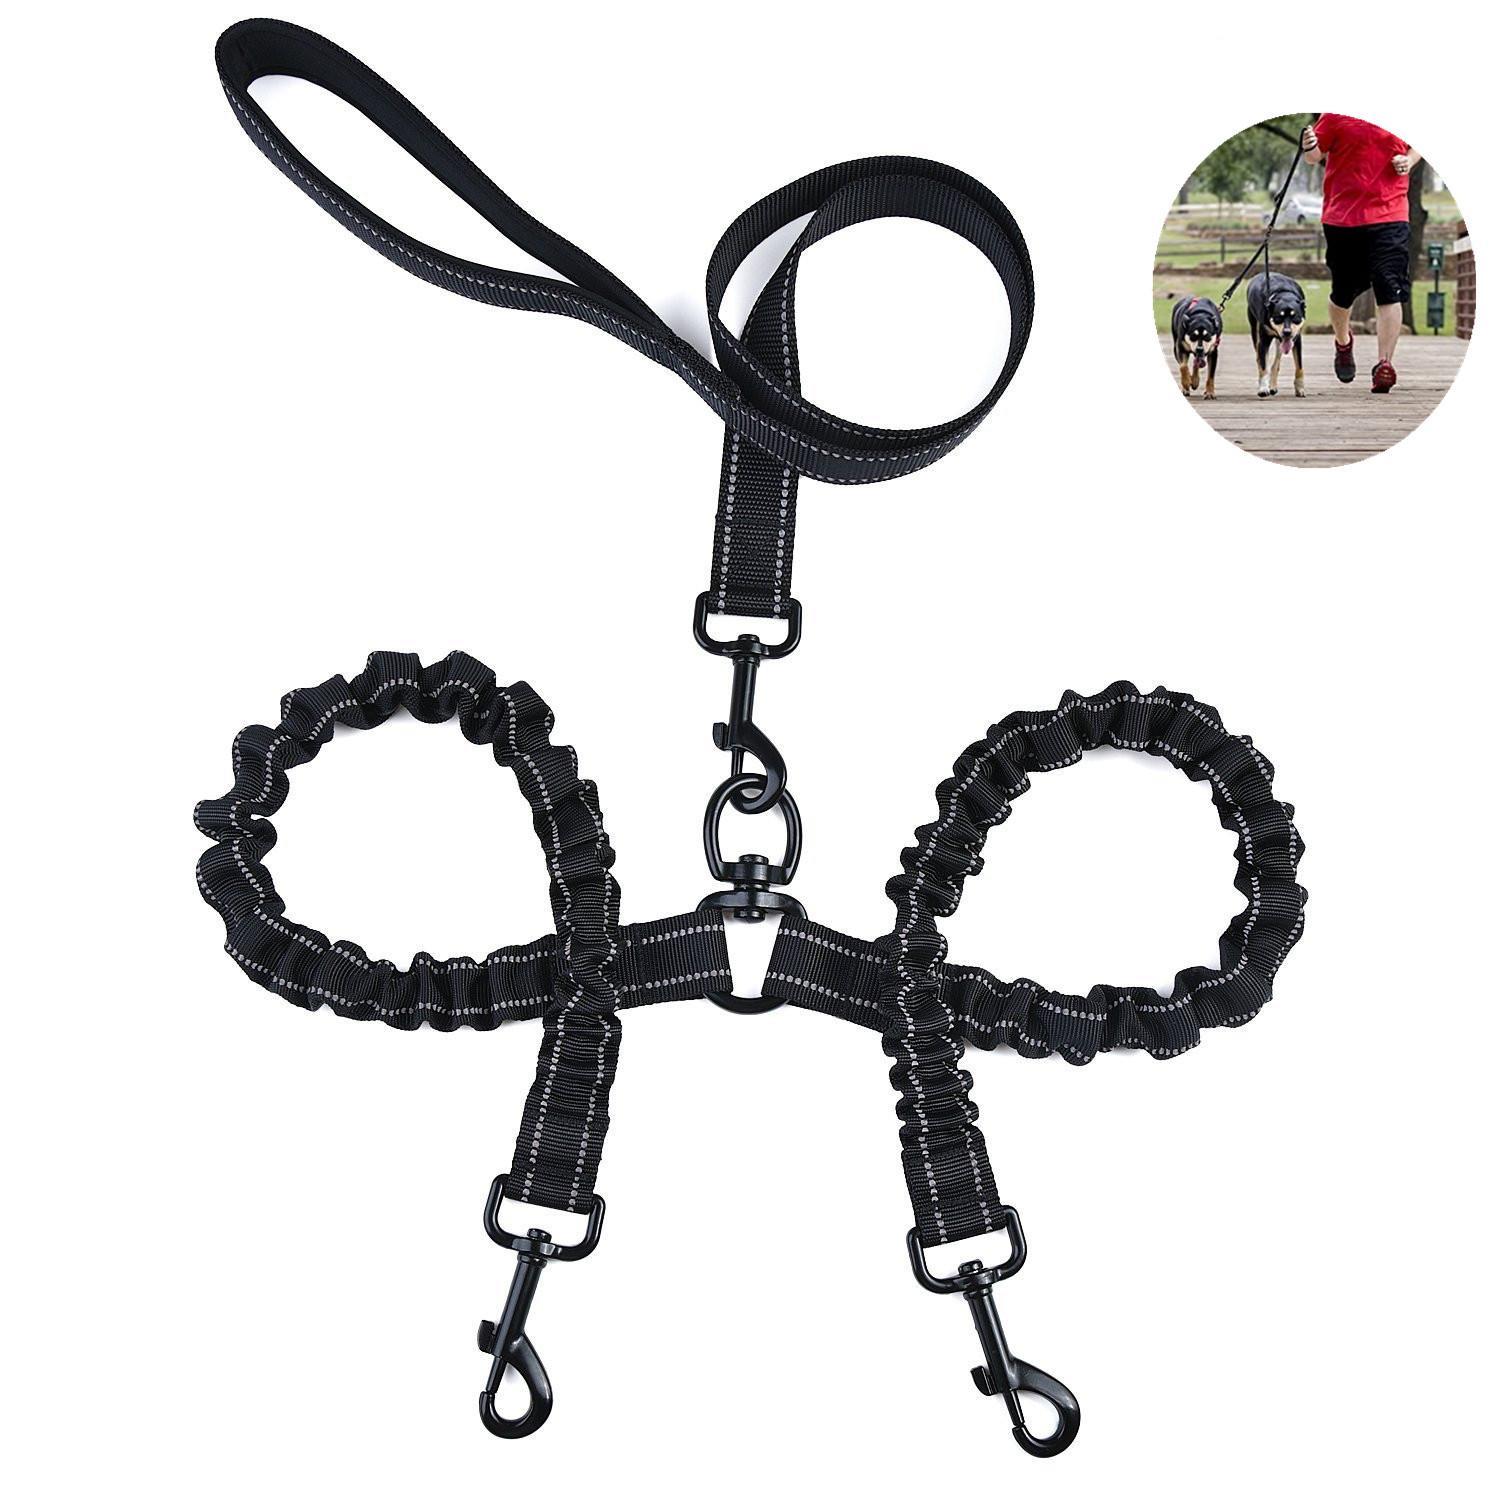 Double dog leash,adjustable heavy double dog leash 360 ° double dog leash with soft handle without knots,walking and training dog leash